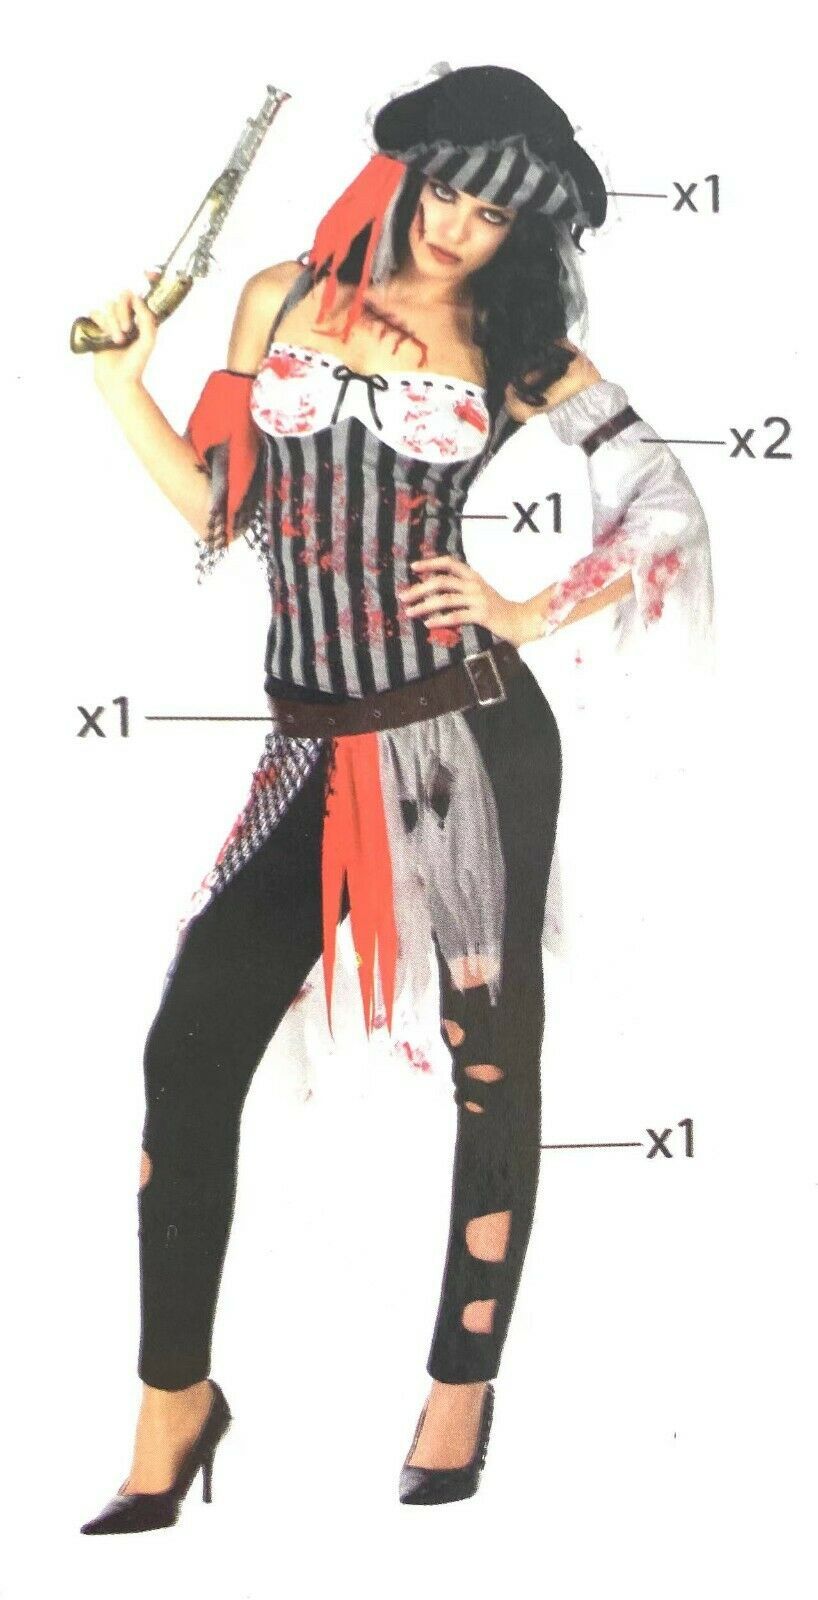 GENERICO Disfraz Mujer Pirata Zombie - XL